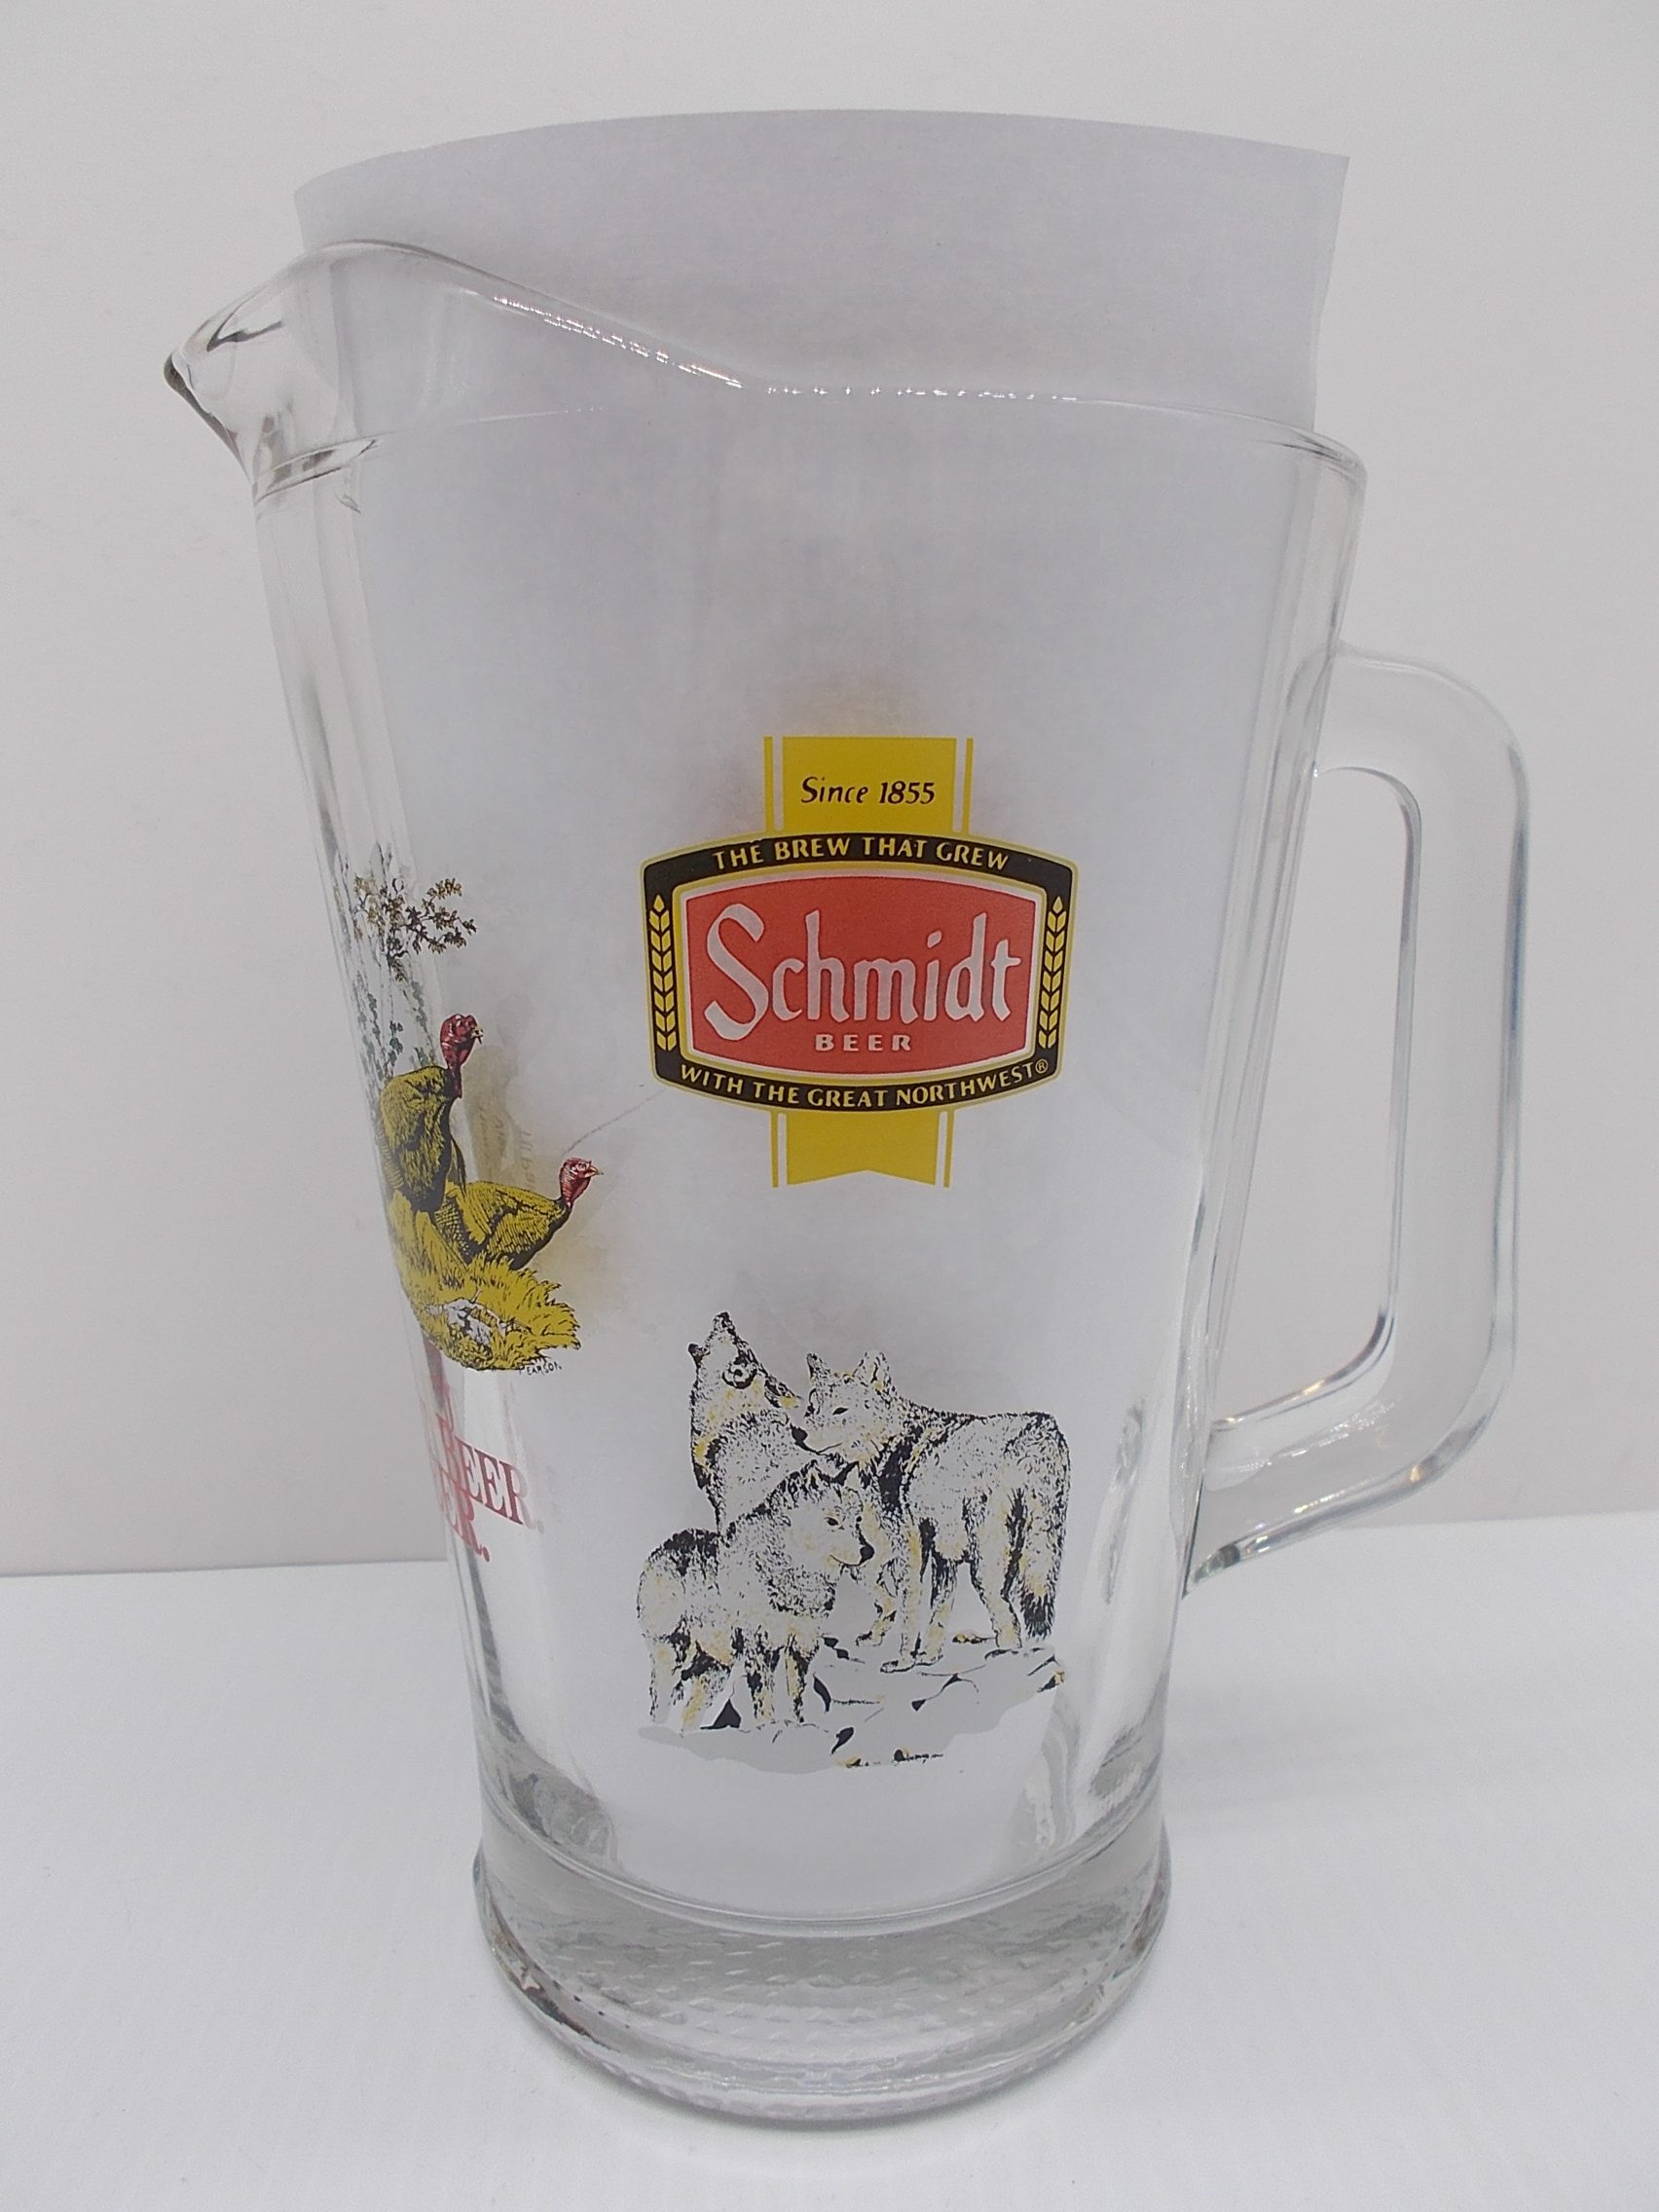 Schmidt Beer Collectors Series II Turkey  Beer Mug